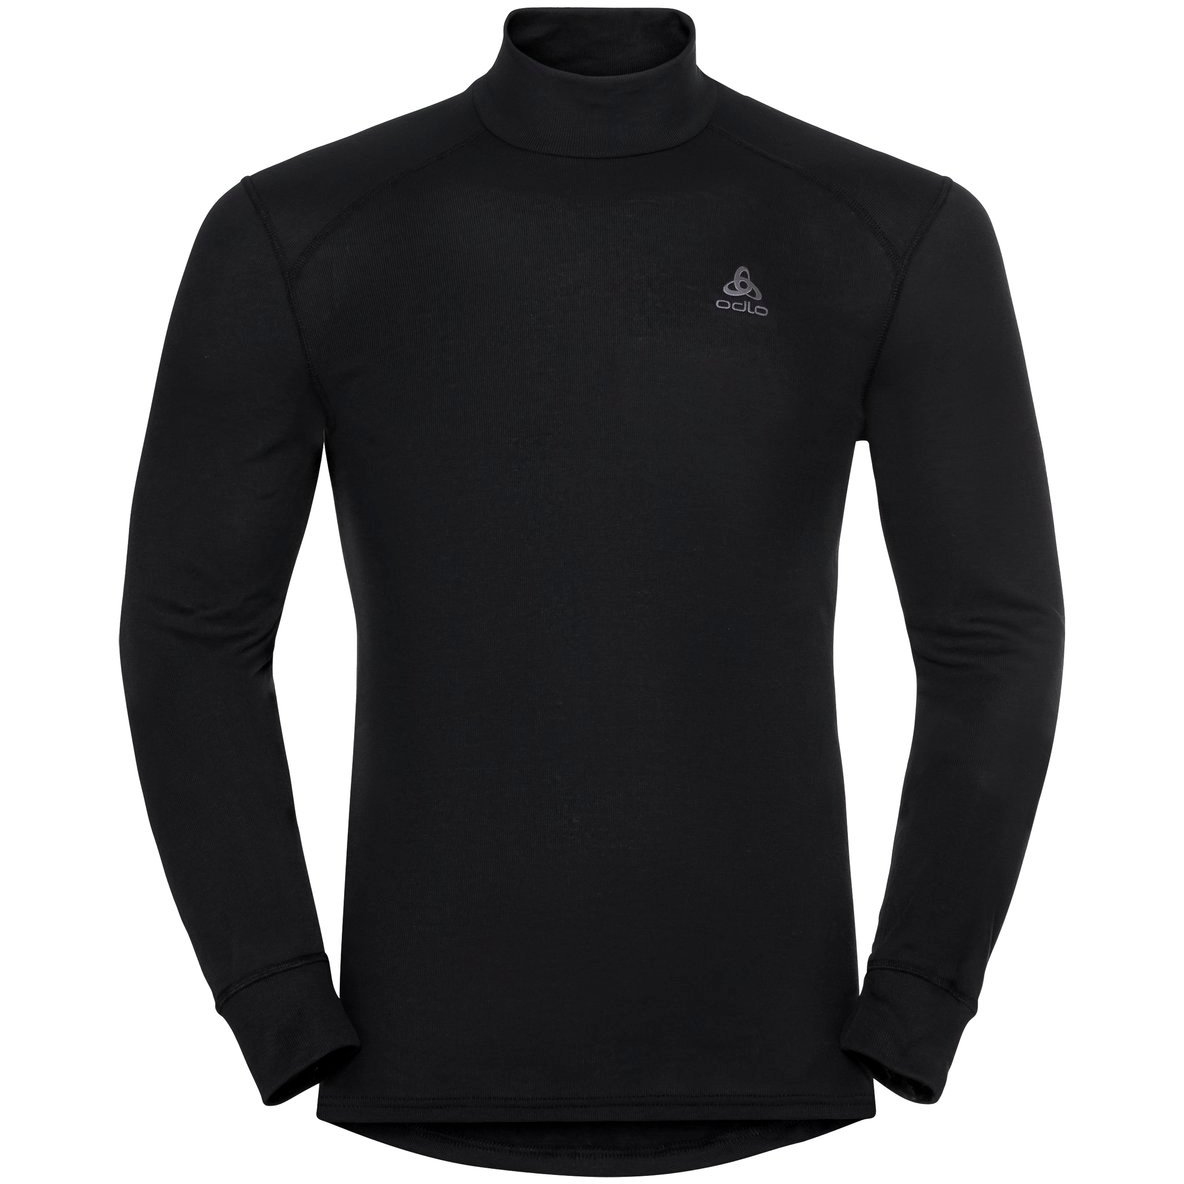 Produktbild von Odlo Active Warm Turtleneck Langarm-Unterhemd Herren - schwarz